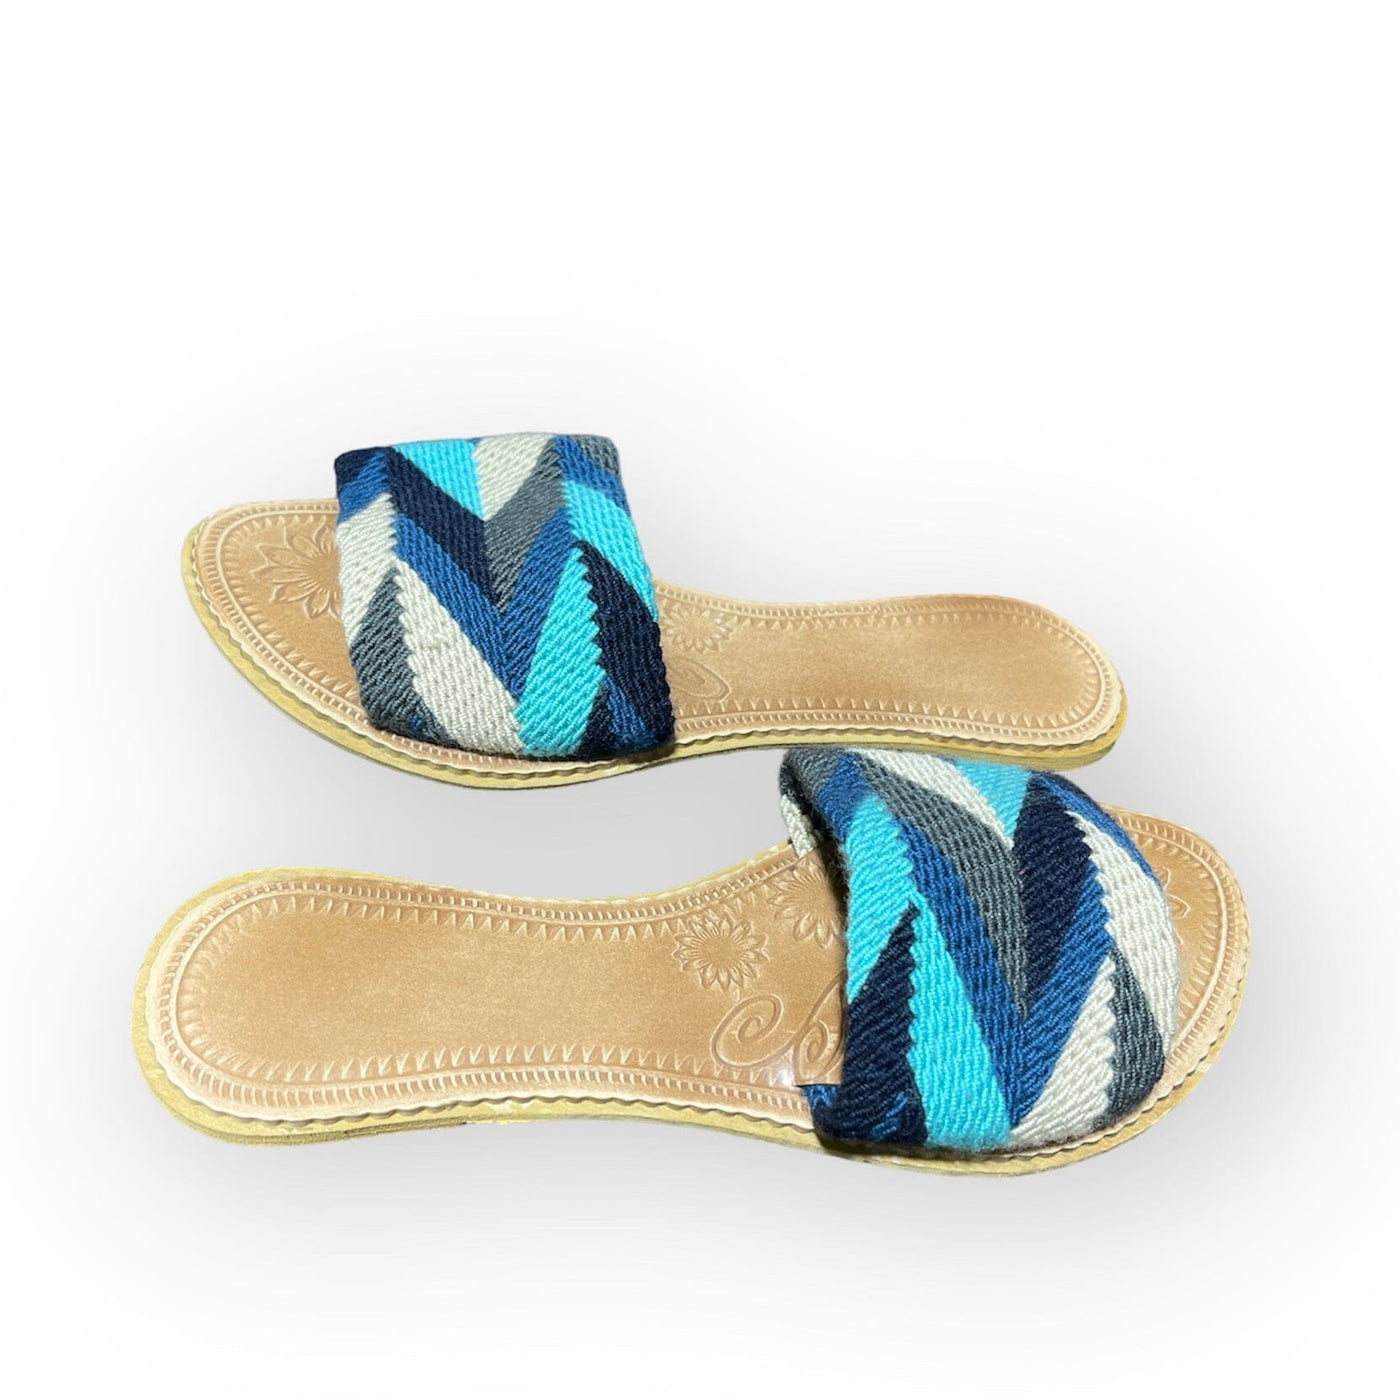 Azula Beach Sandals - Blue Summer Sandals Summer Sandals US 6 